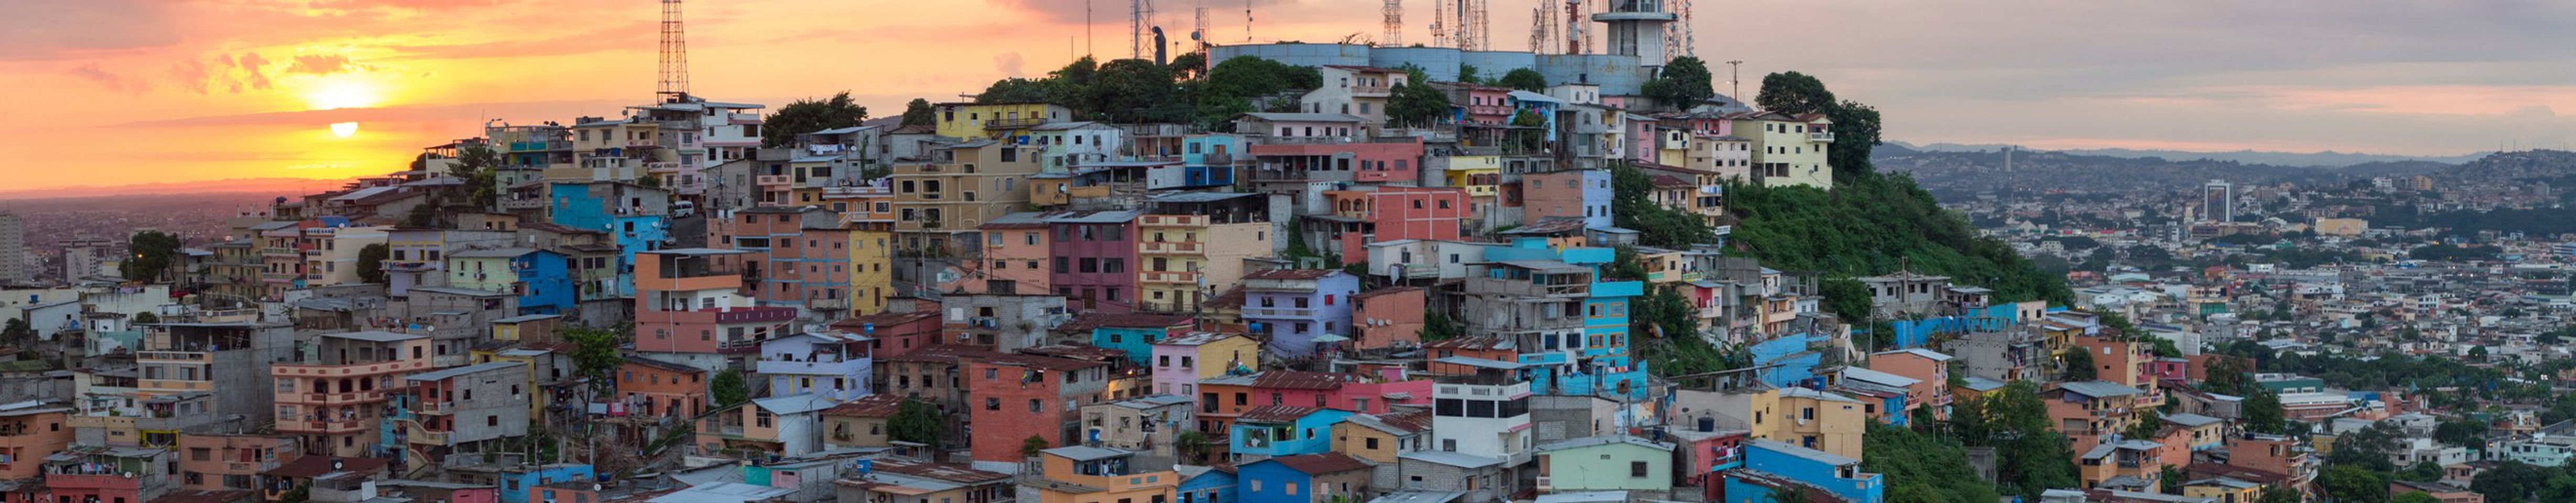 „Guayaquil entdecken: Wichtige Tipps für einen perfekten Urlaub in Ecuador“